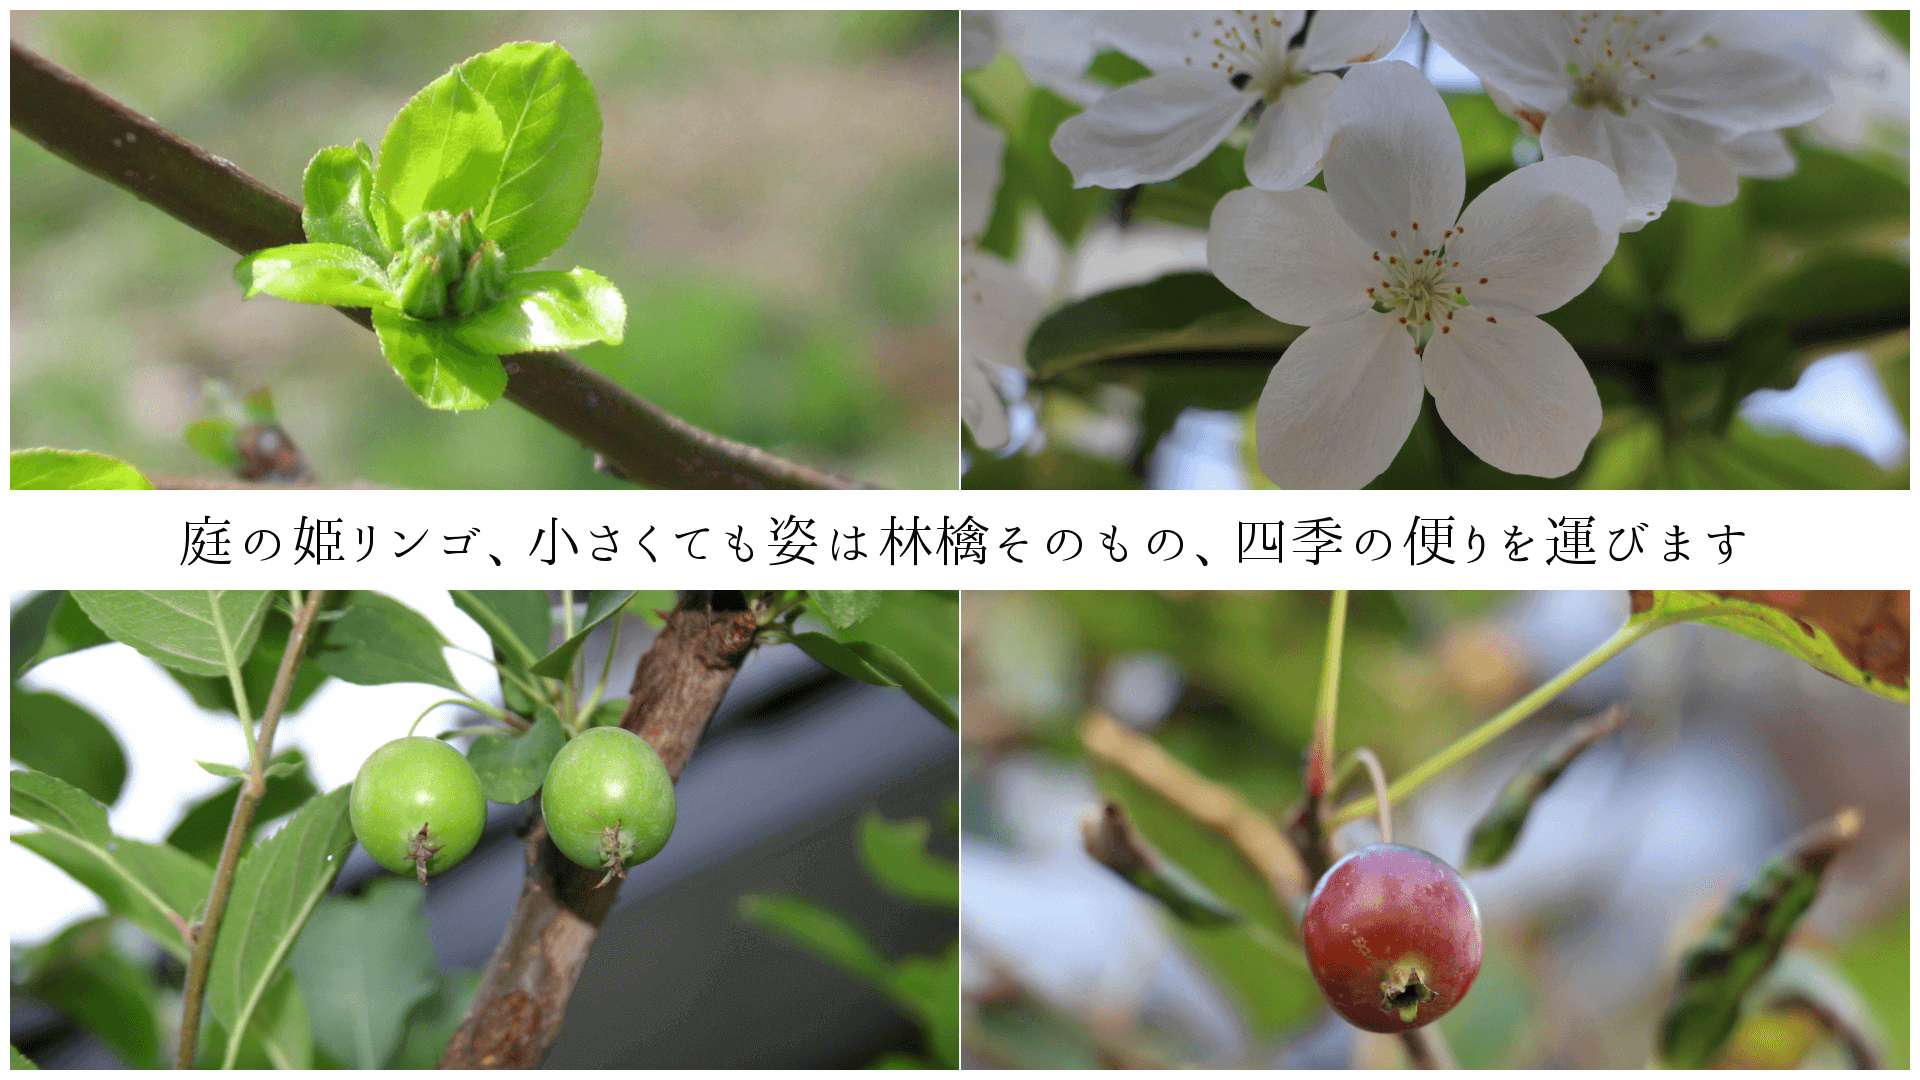 庭の姫リンゴ、小さくても姿は林檎そのもの、四季の便りを運びます